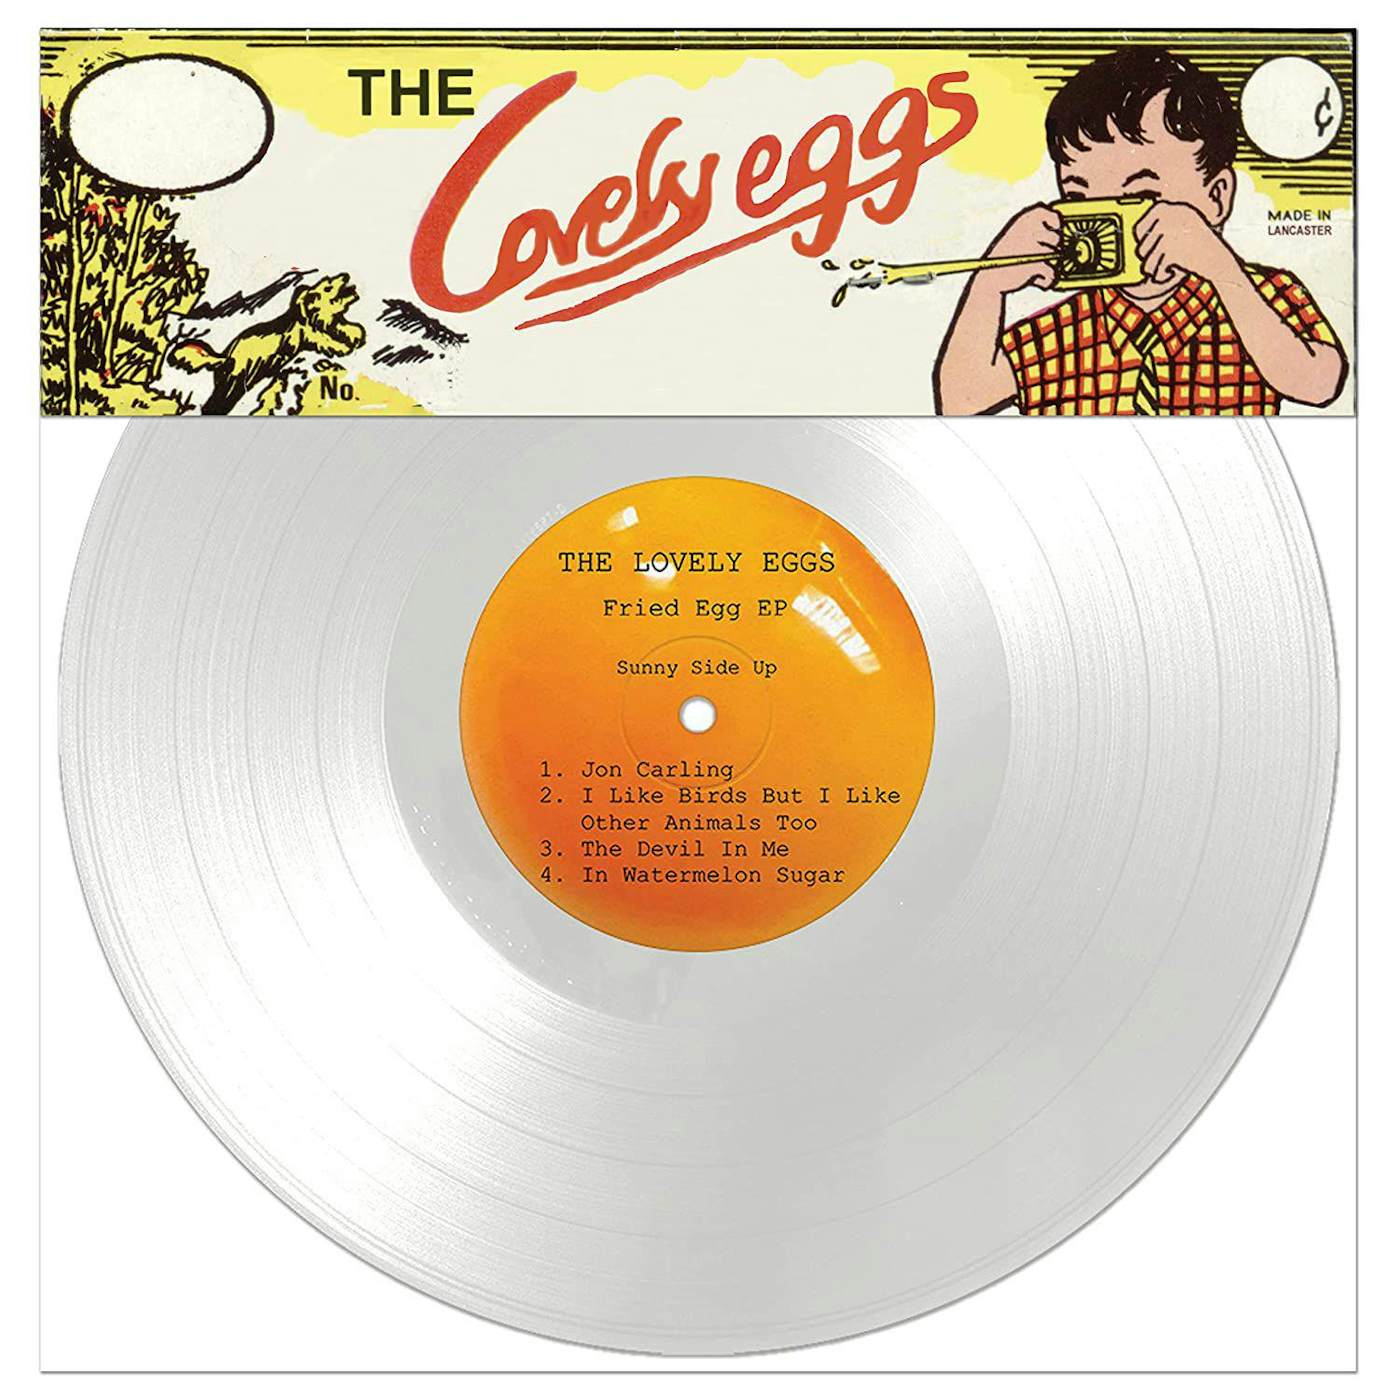 The Lovely Eggs Fried Egg Vinyl Record